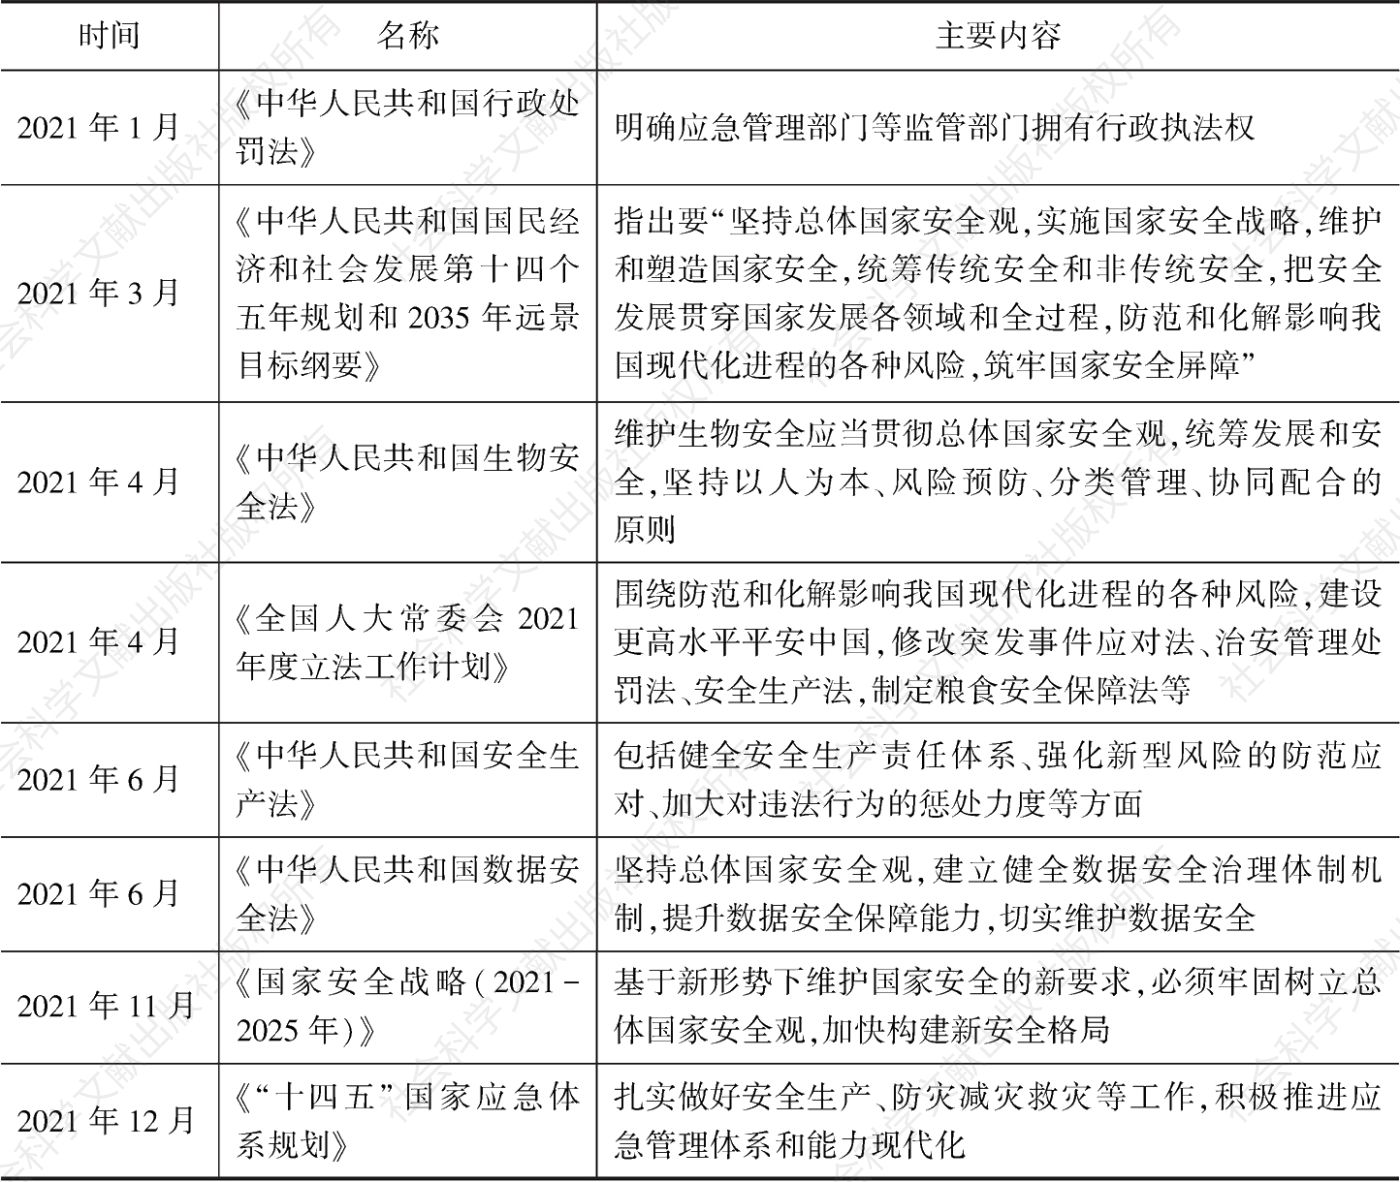 表1 2021年中国风险治理相关法律法规和政策规划主要内容梳理